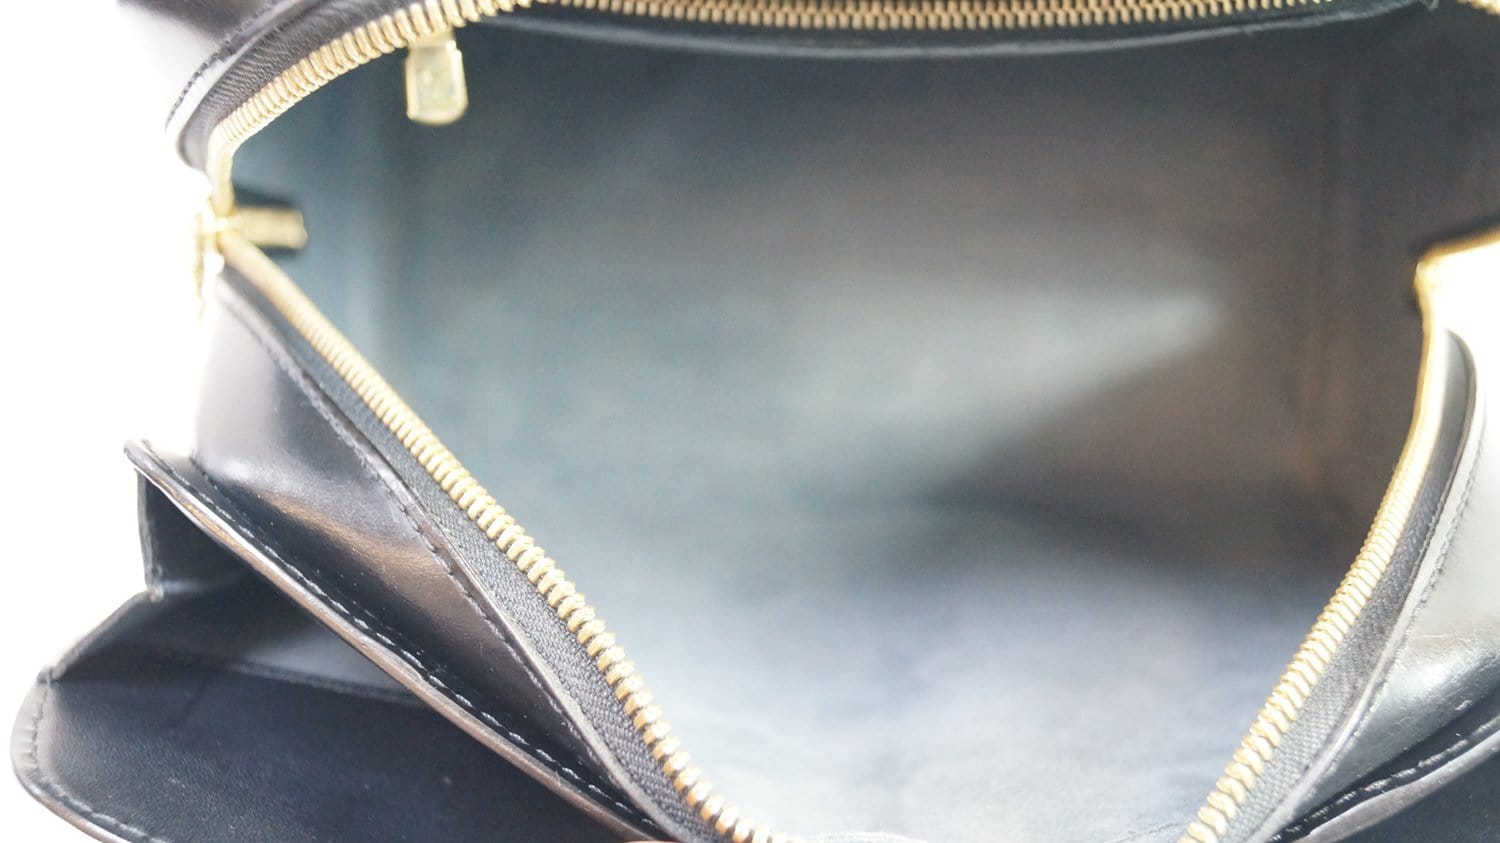 Louis Vuitton // Pont Neuf Epi Leather PM Handbag // Orange // Pre